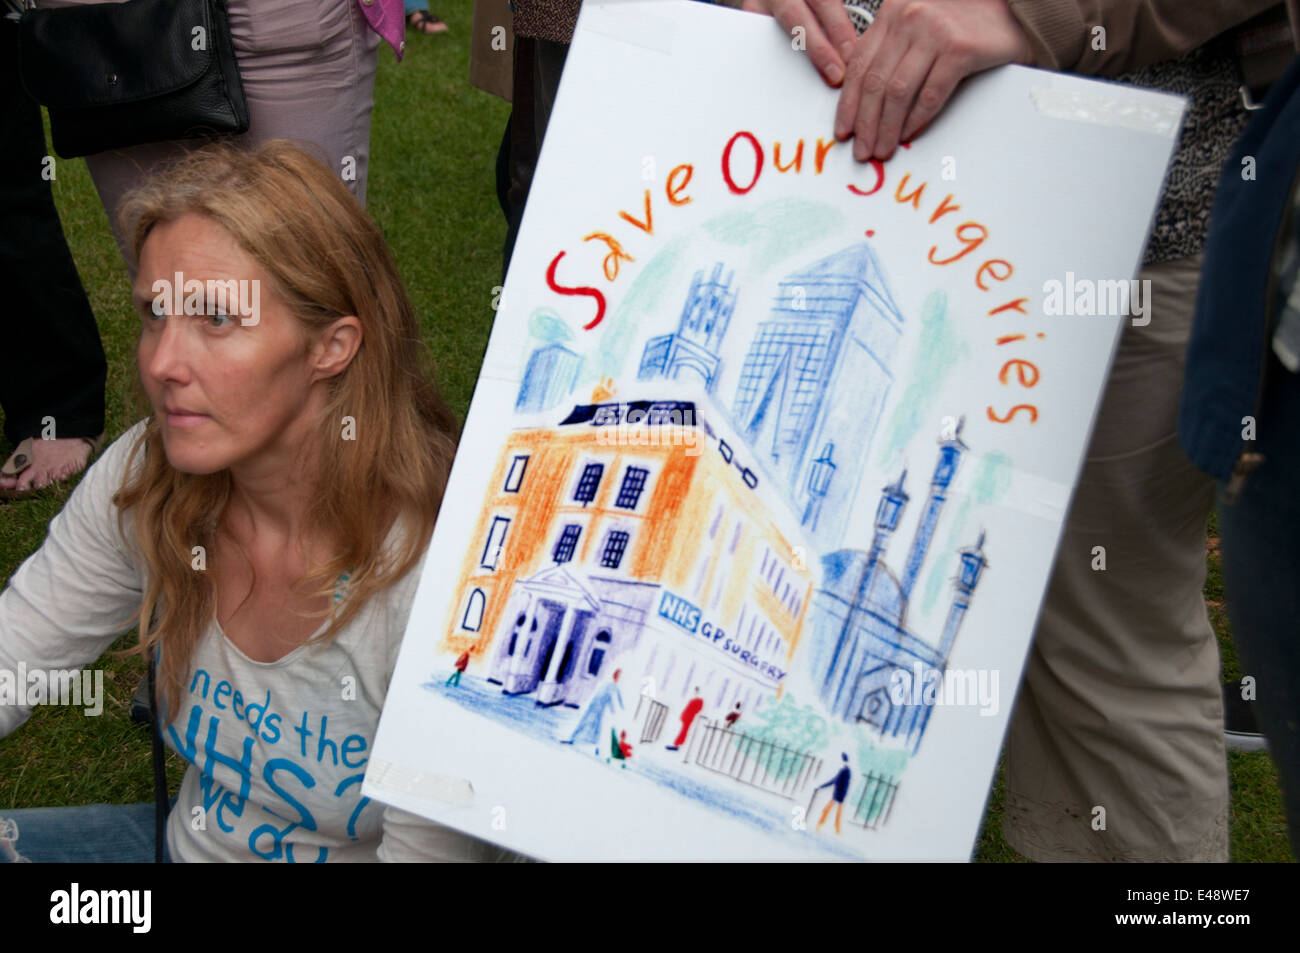 El East End de Londres del 5 de julio de 2014. Concentración y Marcha contra los recortes propuestos para el Servicio Nacional de Salud de los consultorios de los médicos Foto de stock